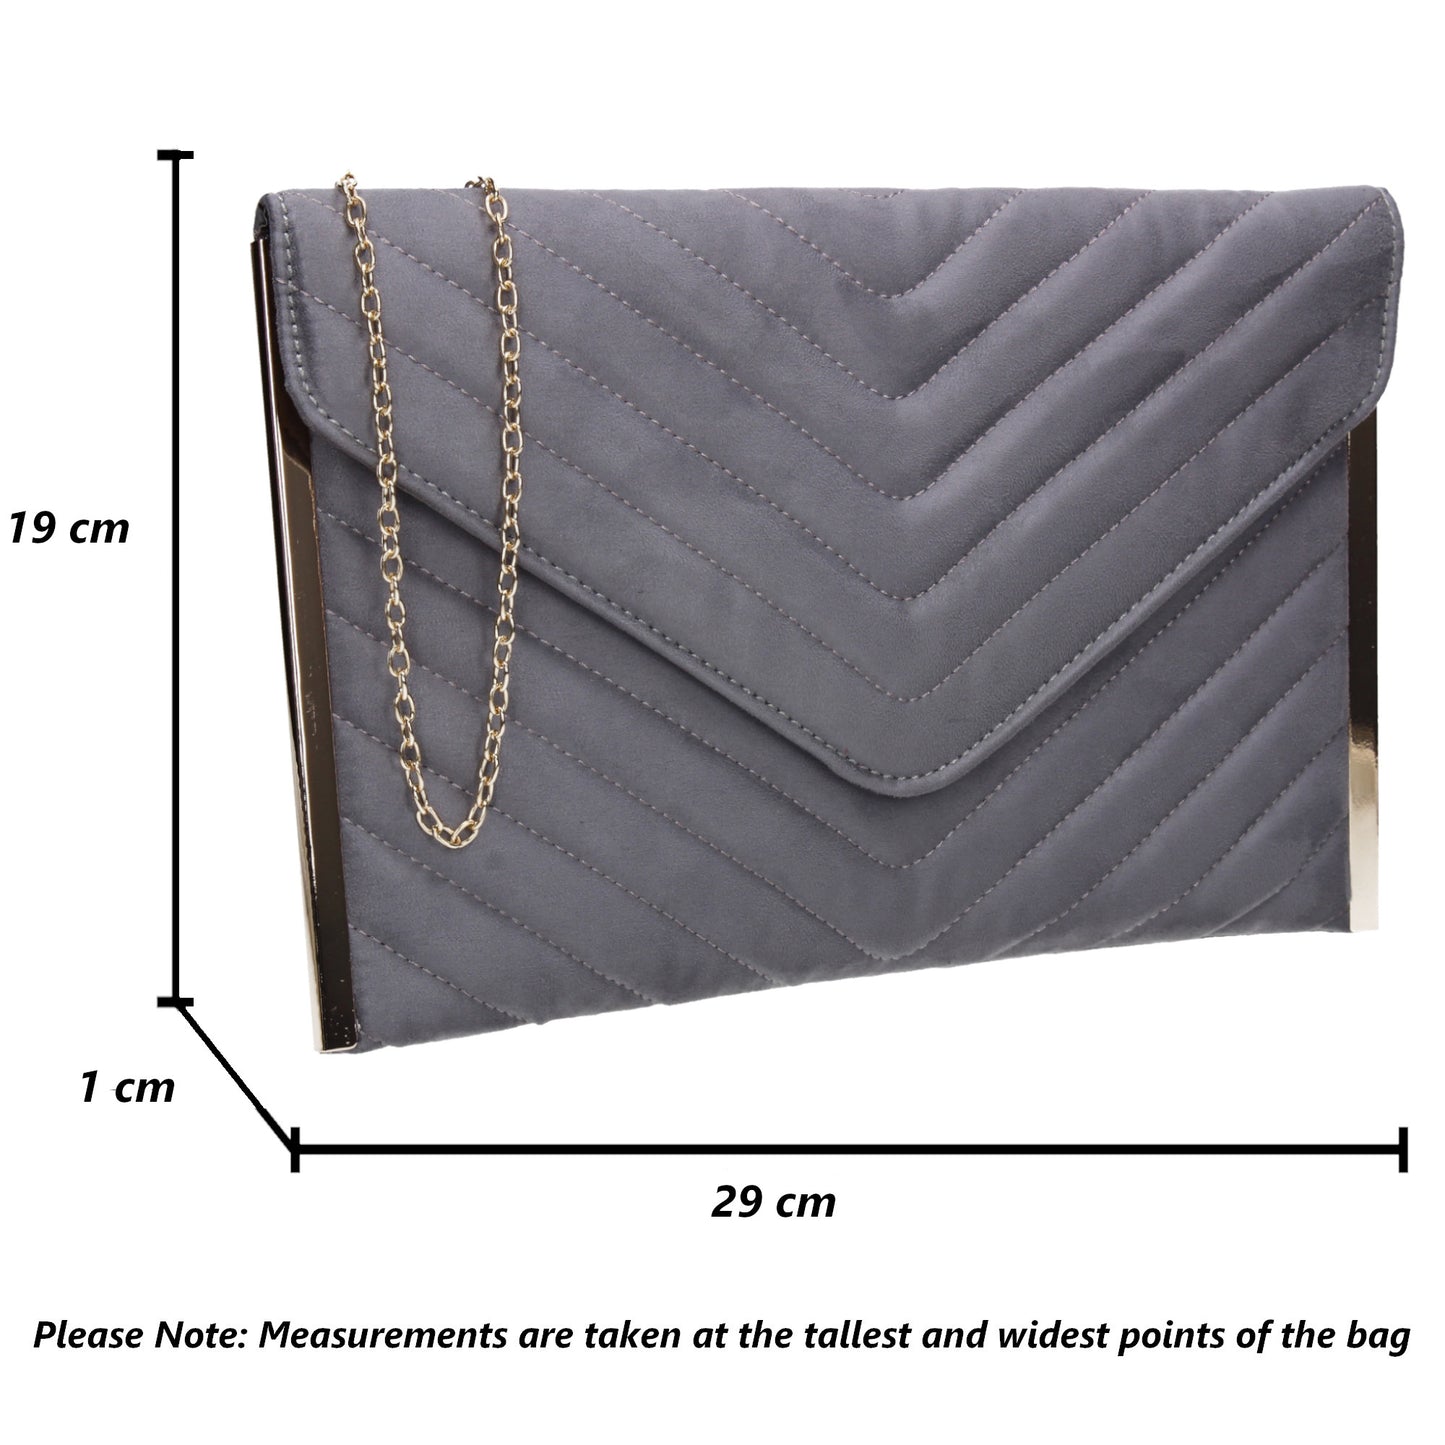 SWANKYSWANS Tessa Clutch Bag Grey Cute Cheap Clutch Bag For Weddings School and Work